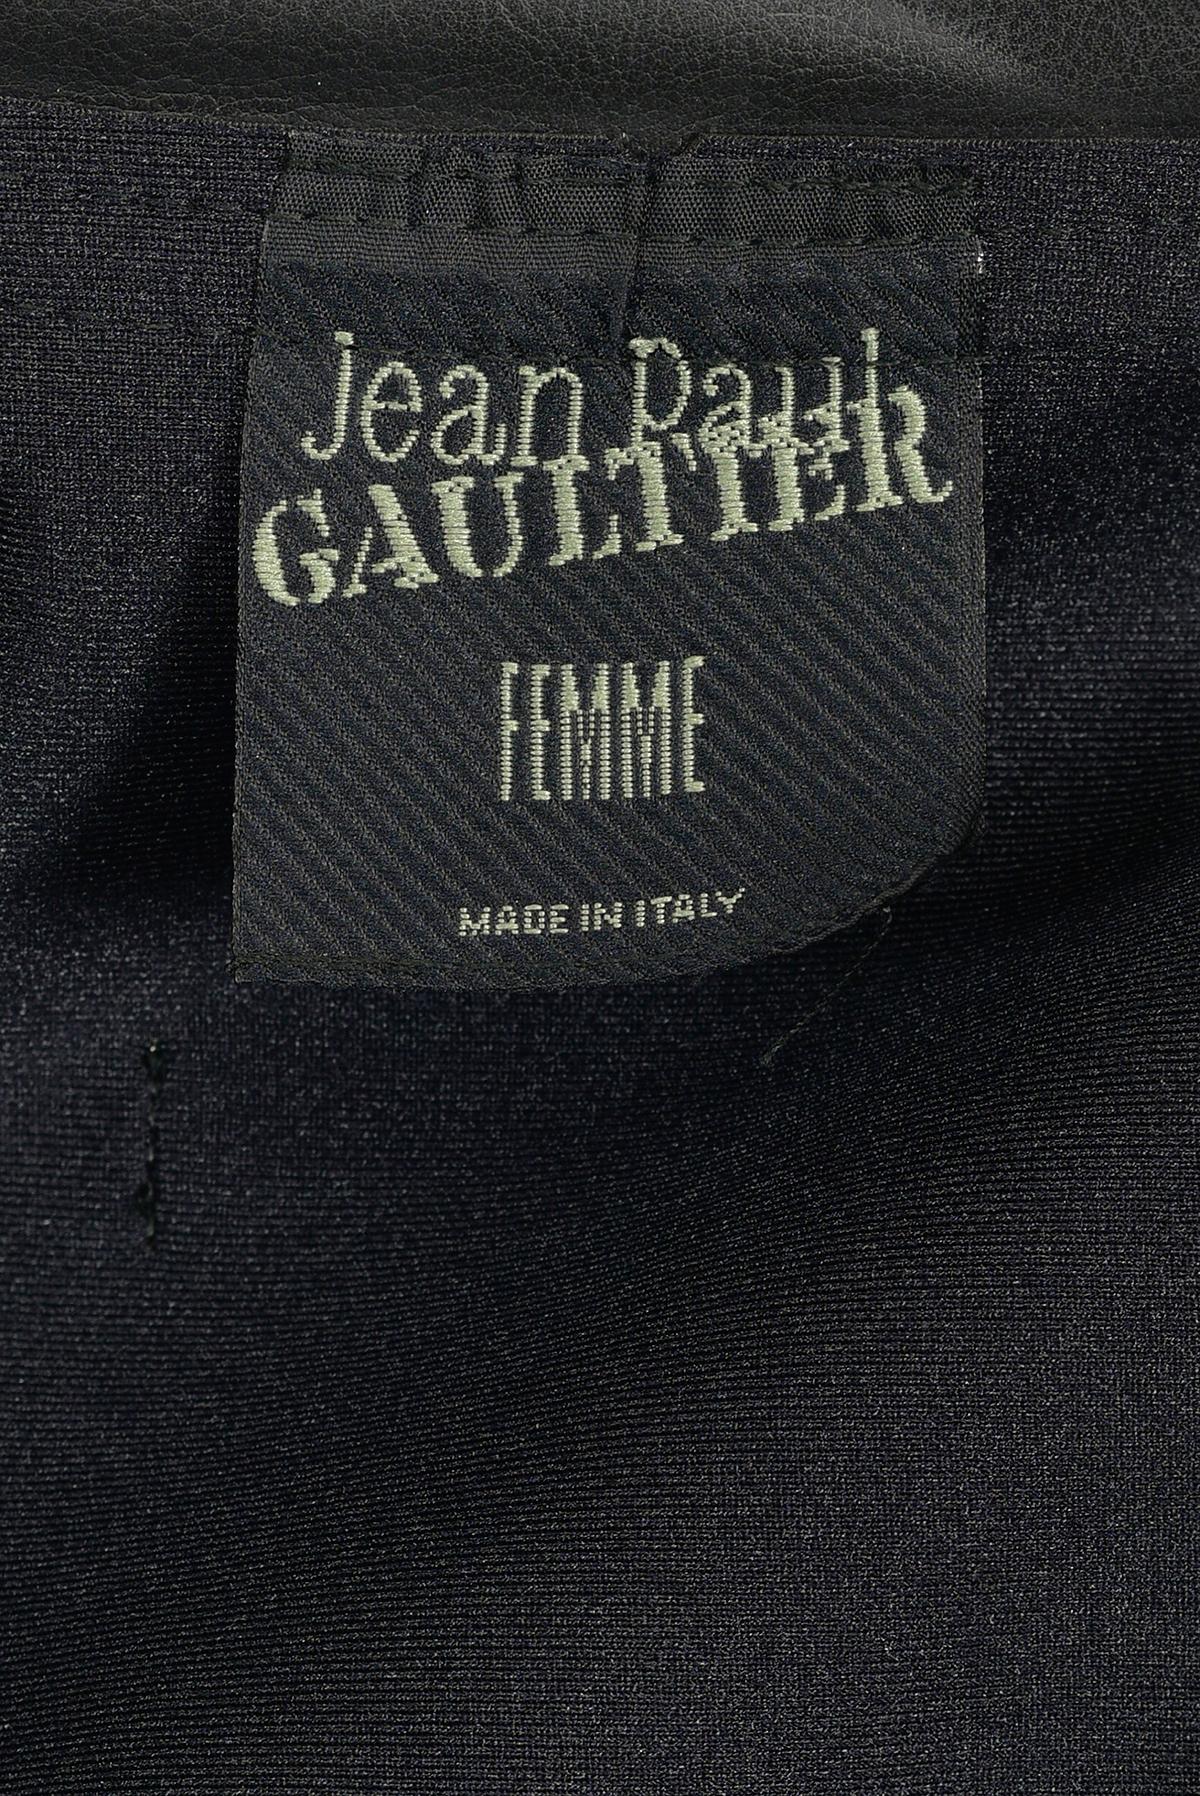 Women's or Men's JEAN PAUL GAULTIER  FW 95 Fake Leather Bustier Jacket For Sale